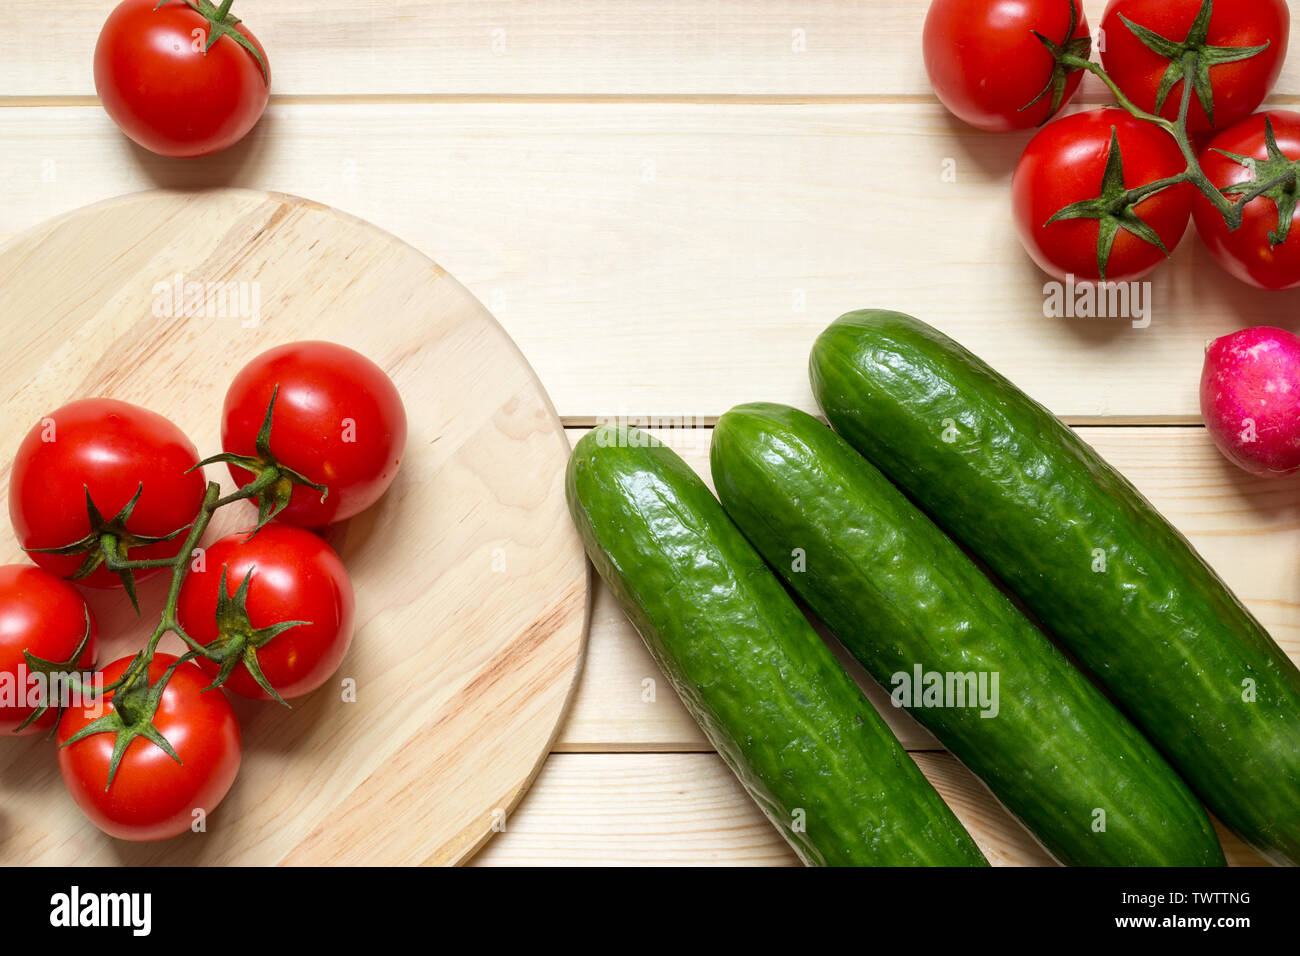 Les ingrédients alimentaires biologiques frais cuisine table en bois. Tomates cerises rouges, verts concombres et radis. Cuisine ronde de sélection. Les légumes frais. Matières fo Banque D'Images